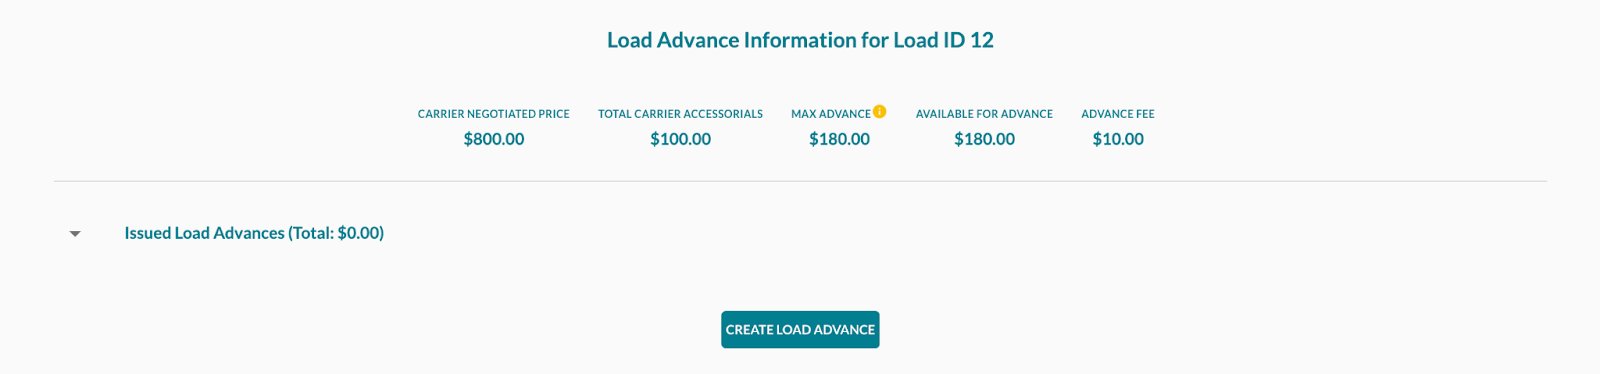 load_advance_1.png